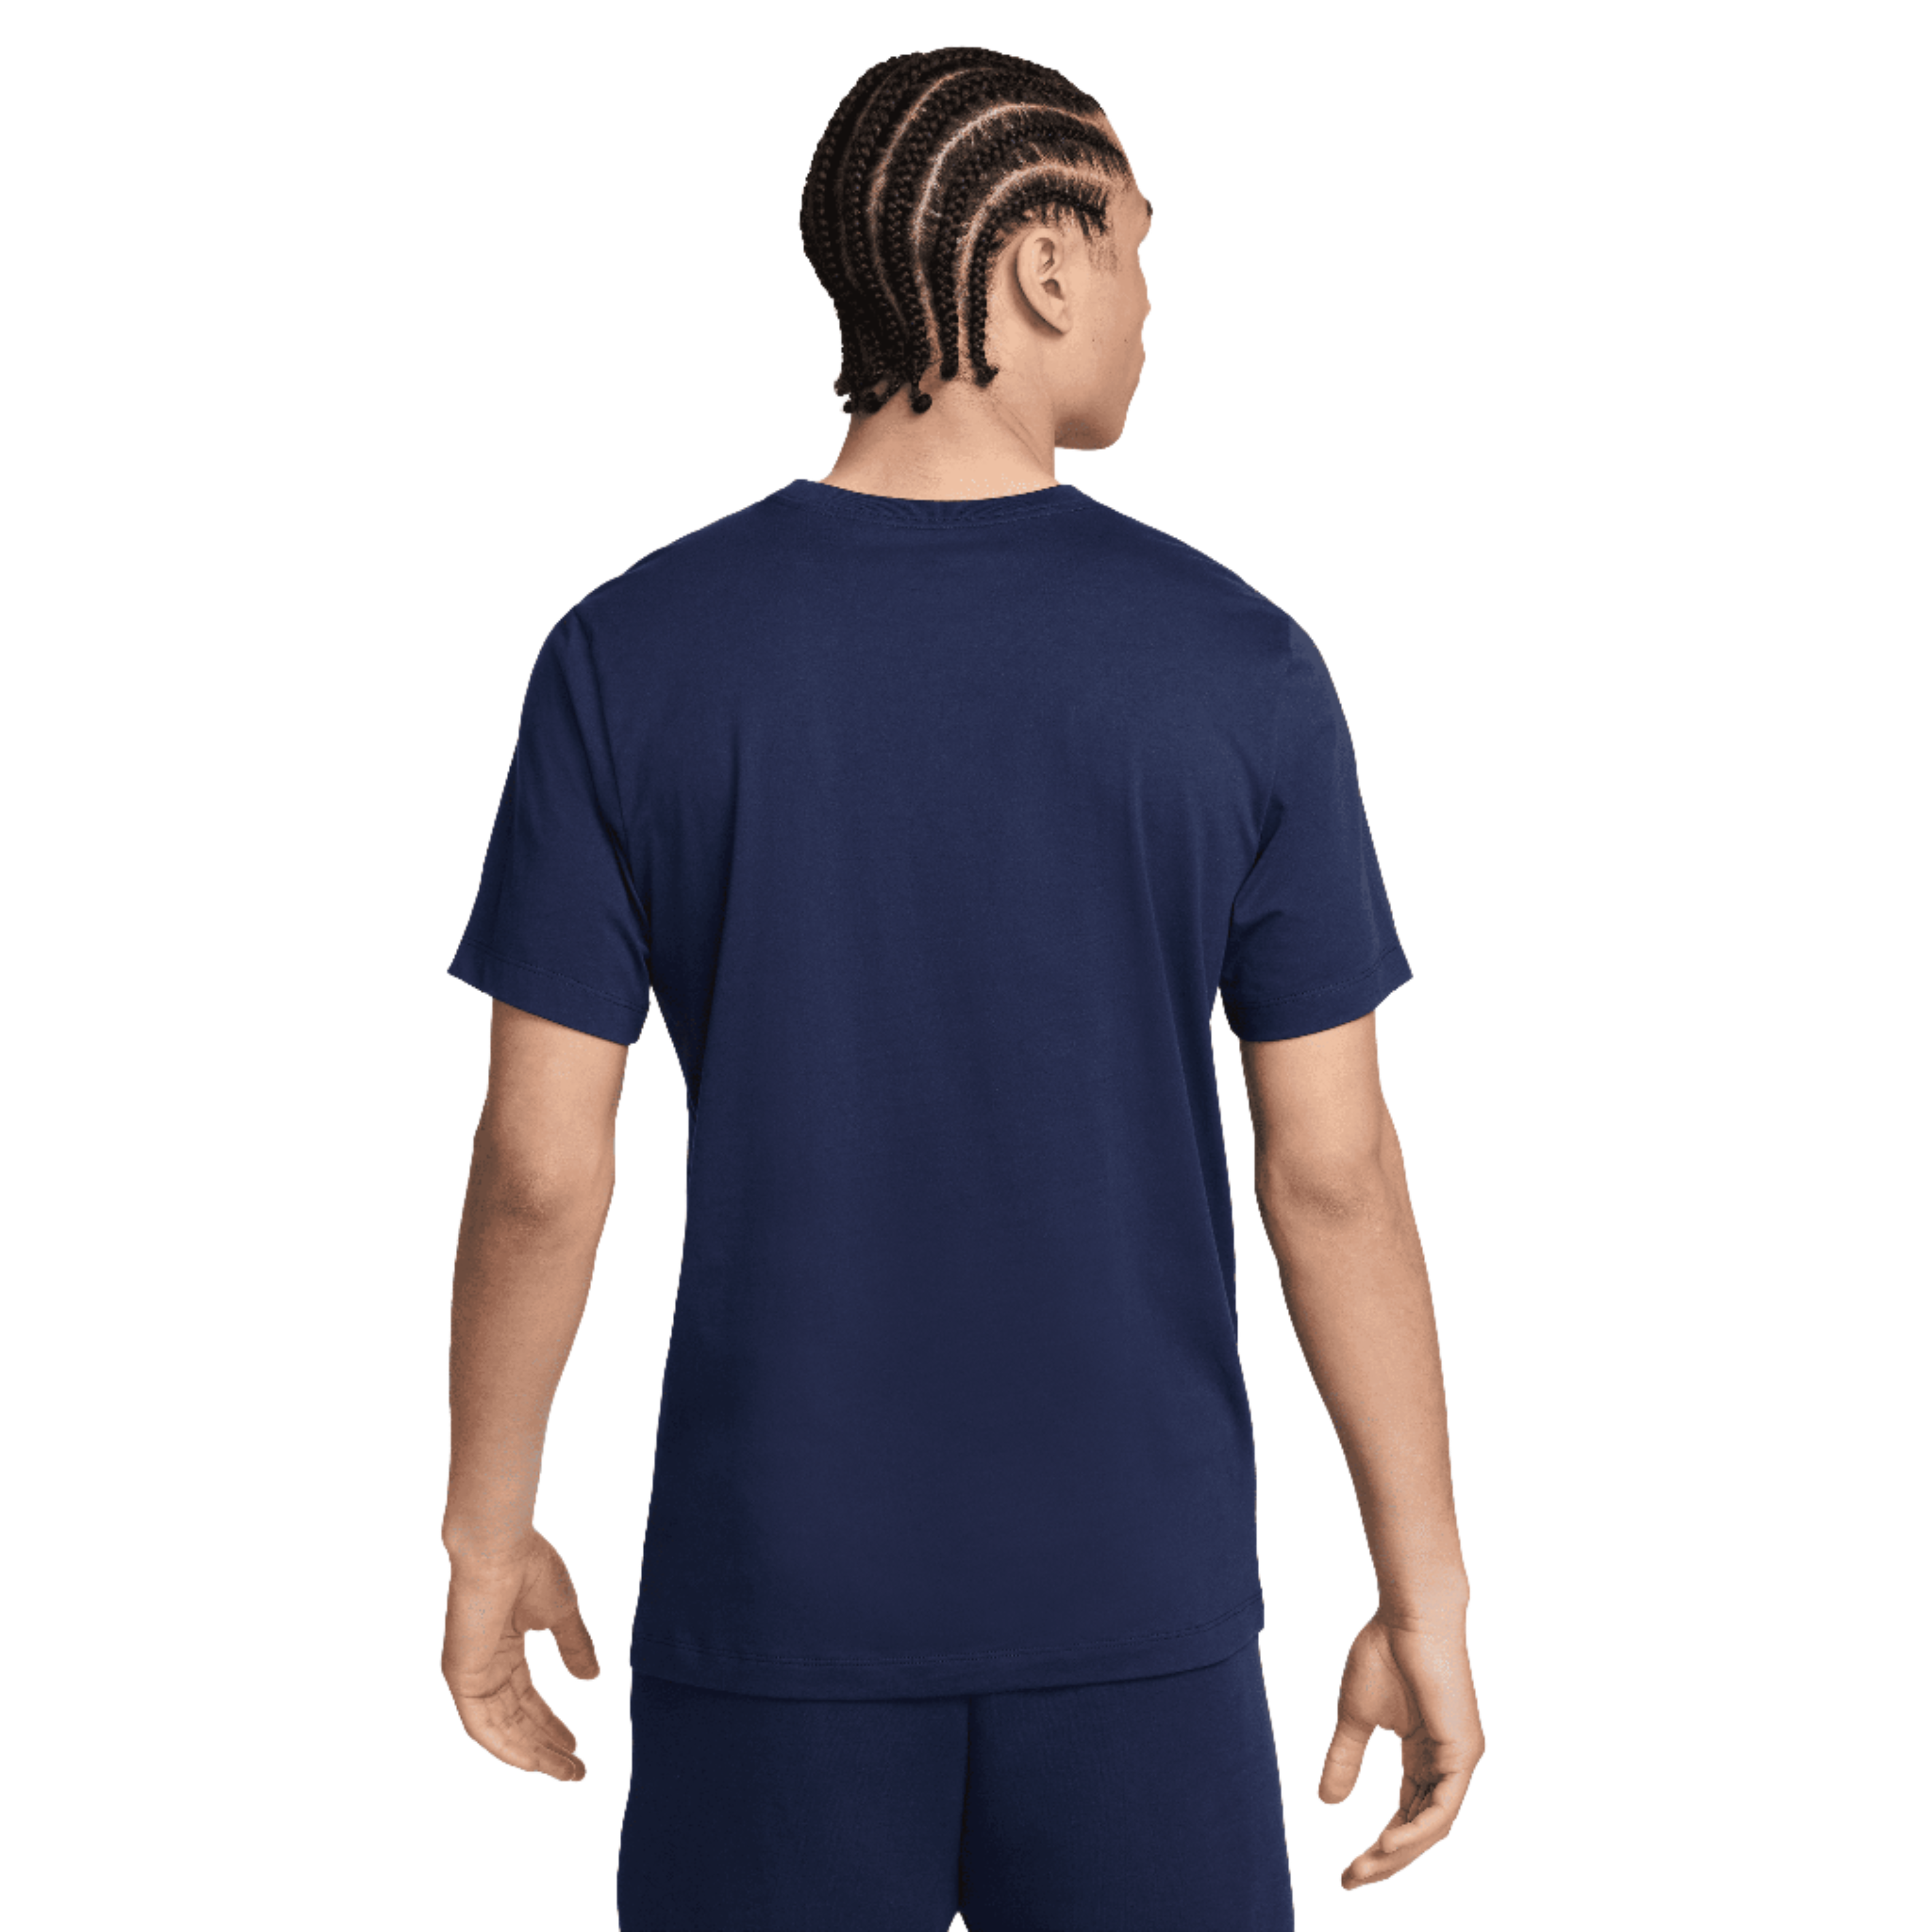 Nike Men's Paris Saint-Germain Soccer T-Shirt-Navy